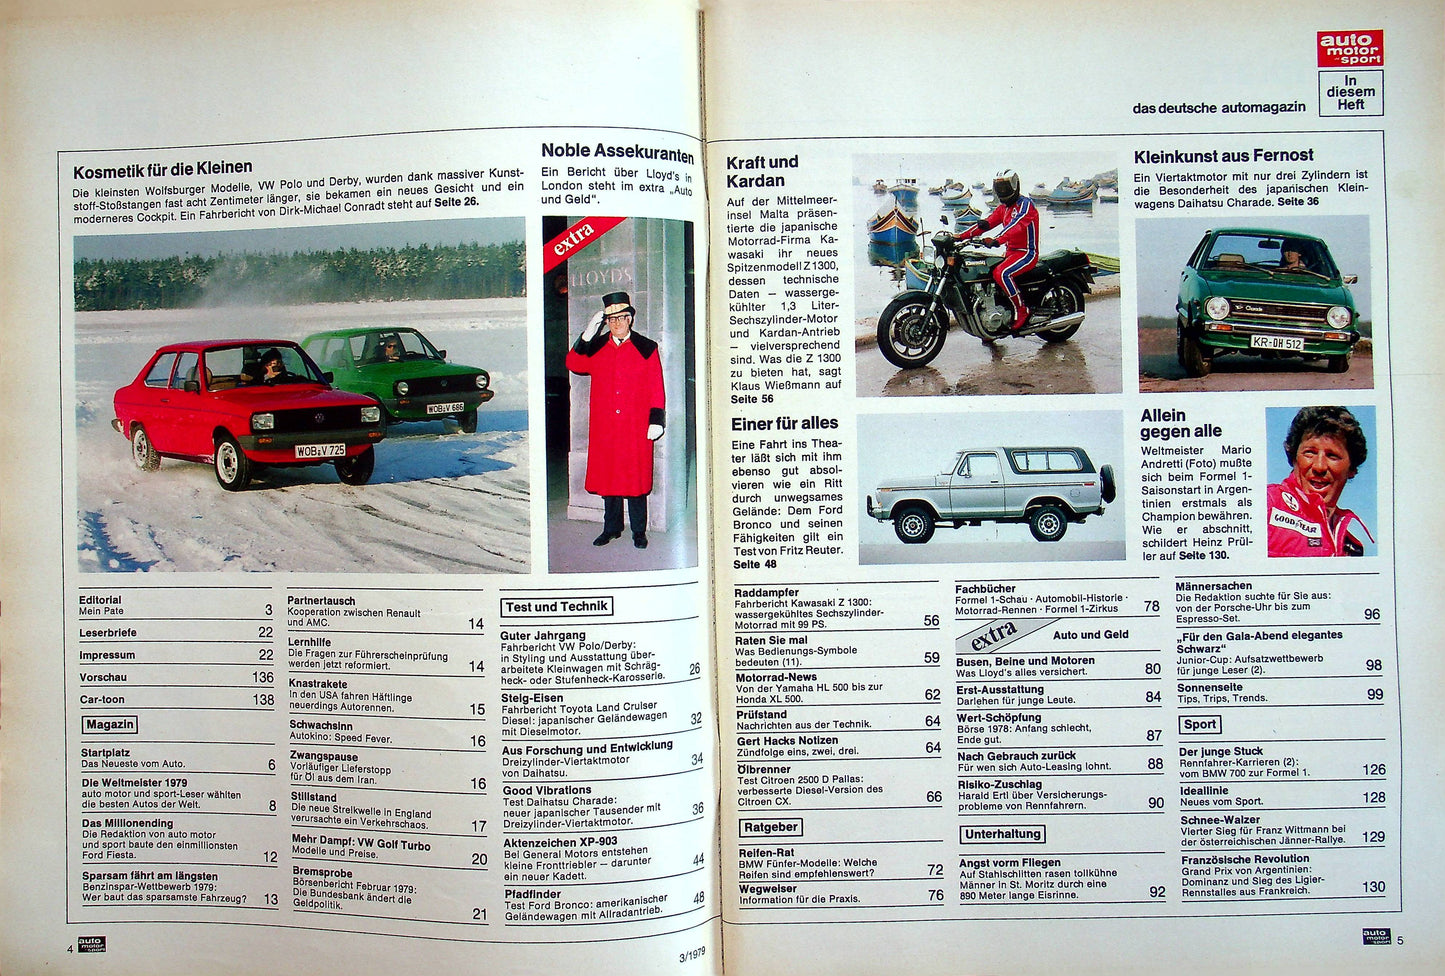 Auto Motor und Sport 03/1979